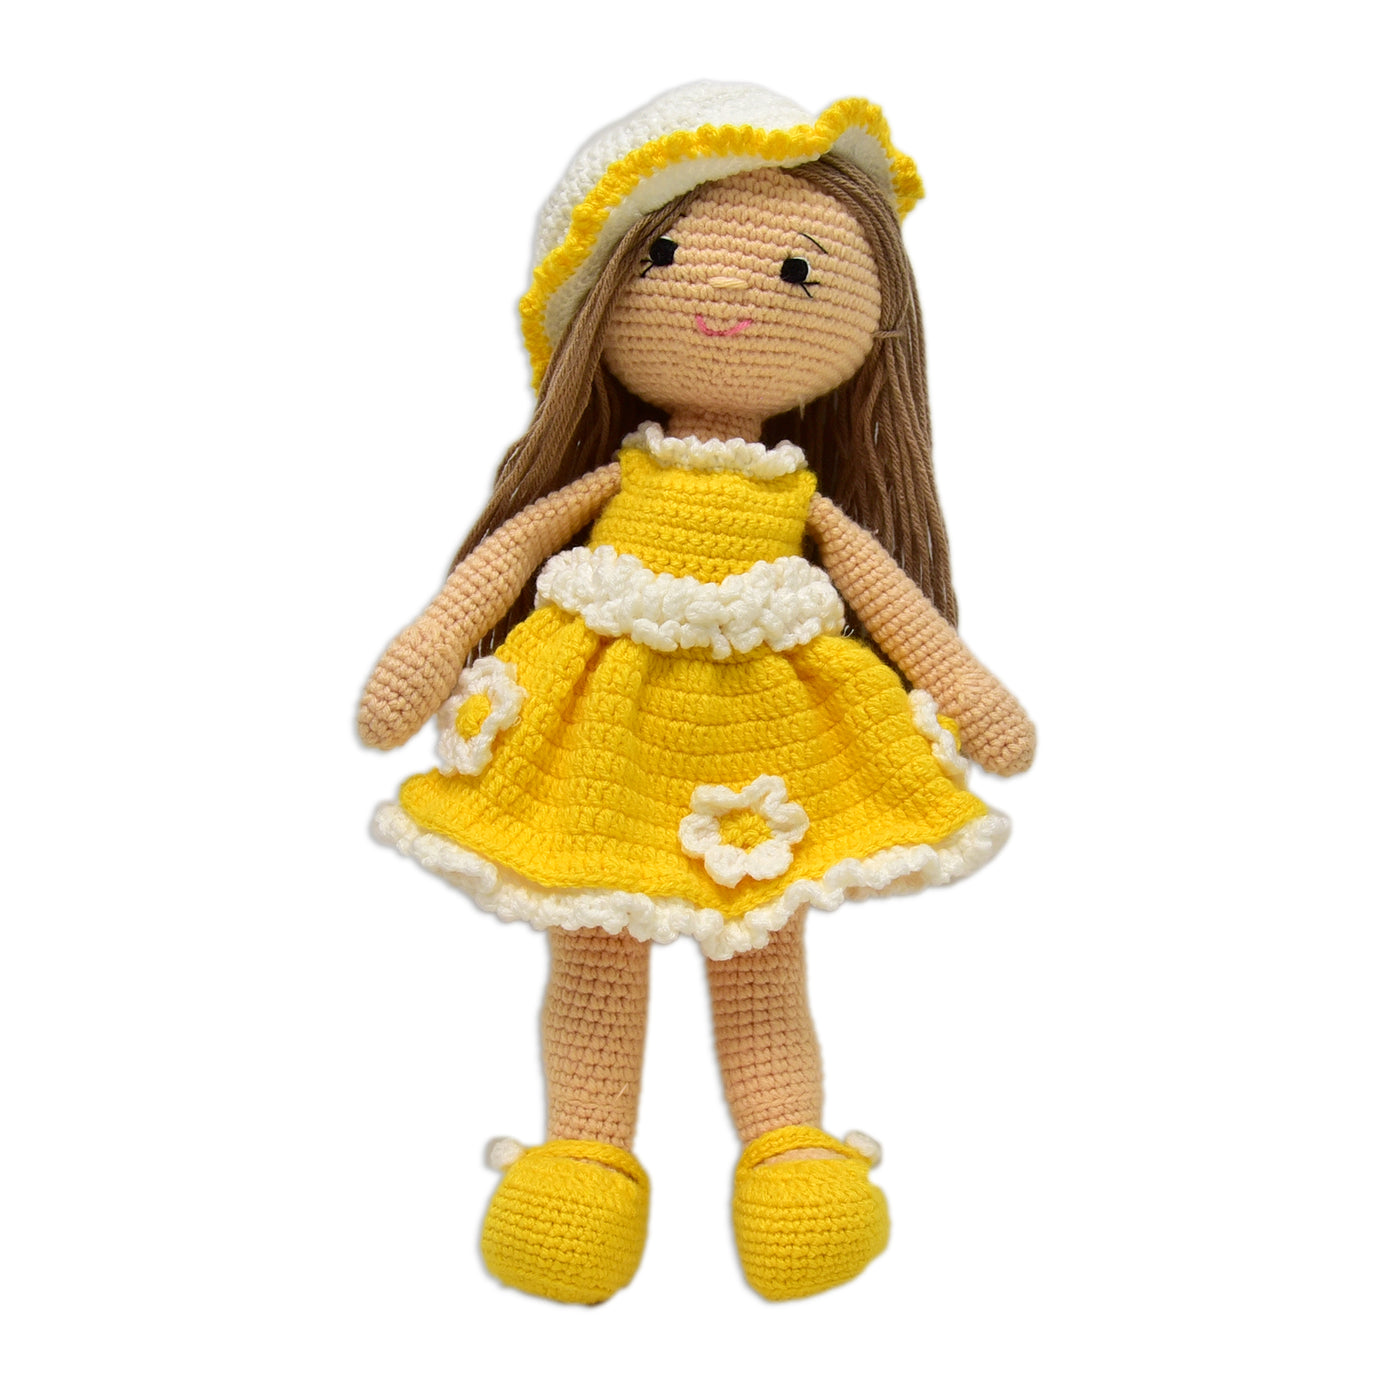 100 % Handmade Crochet Doll- Sunshine